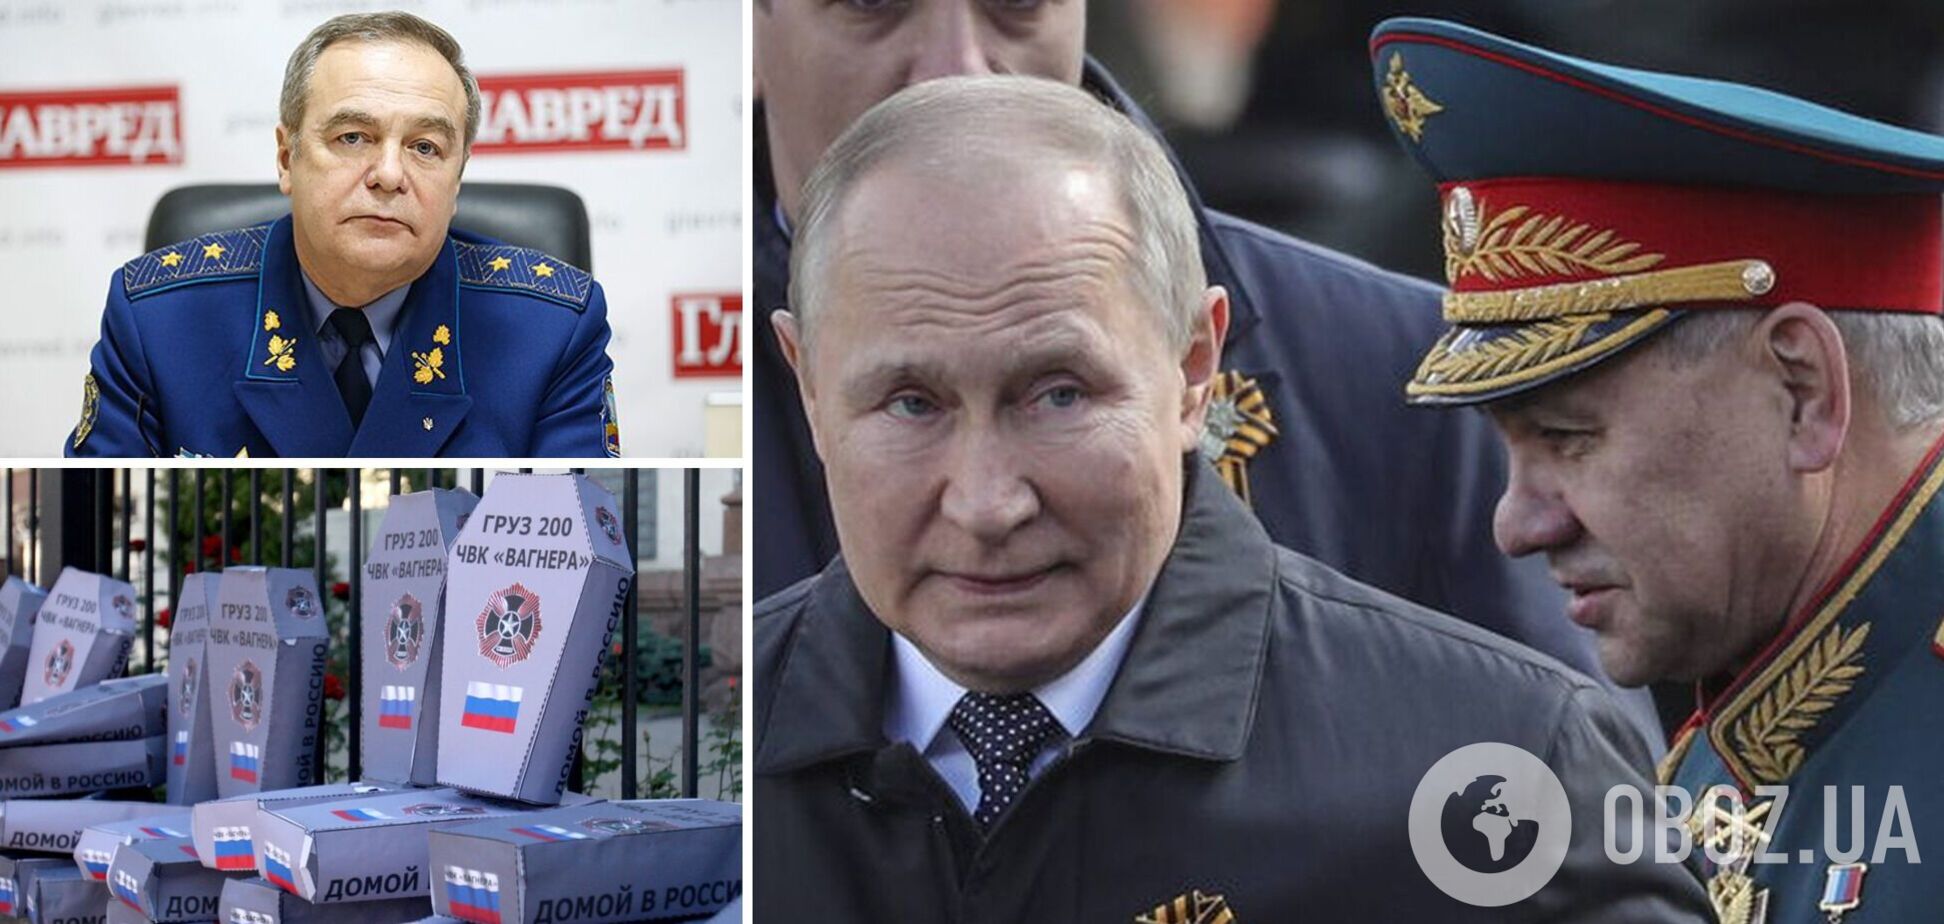 Генерал Романенко: Путіну доведеться здавати позиції, його знесуть разом із троном. Інтерв'ю